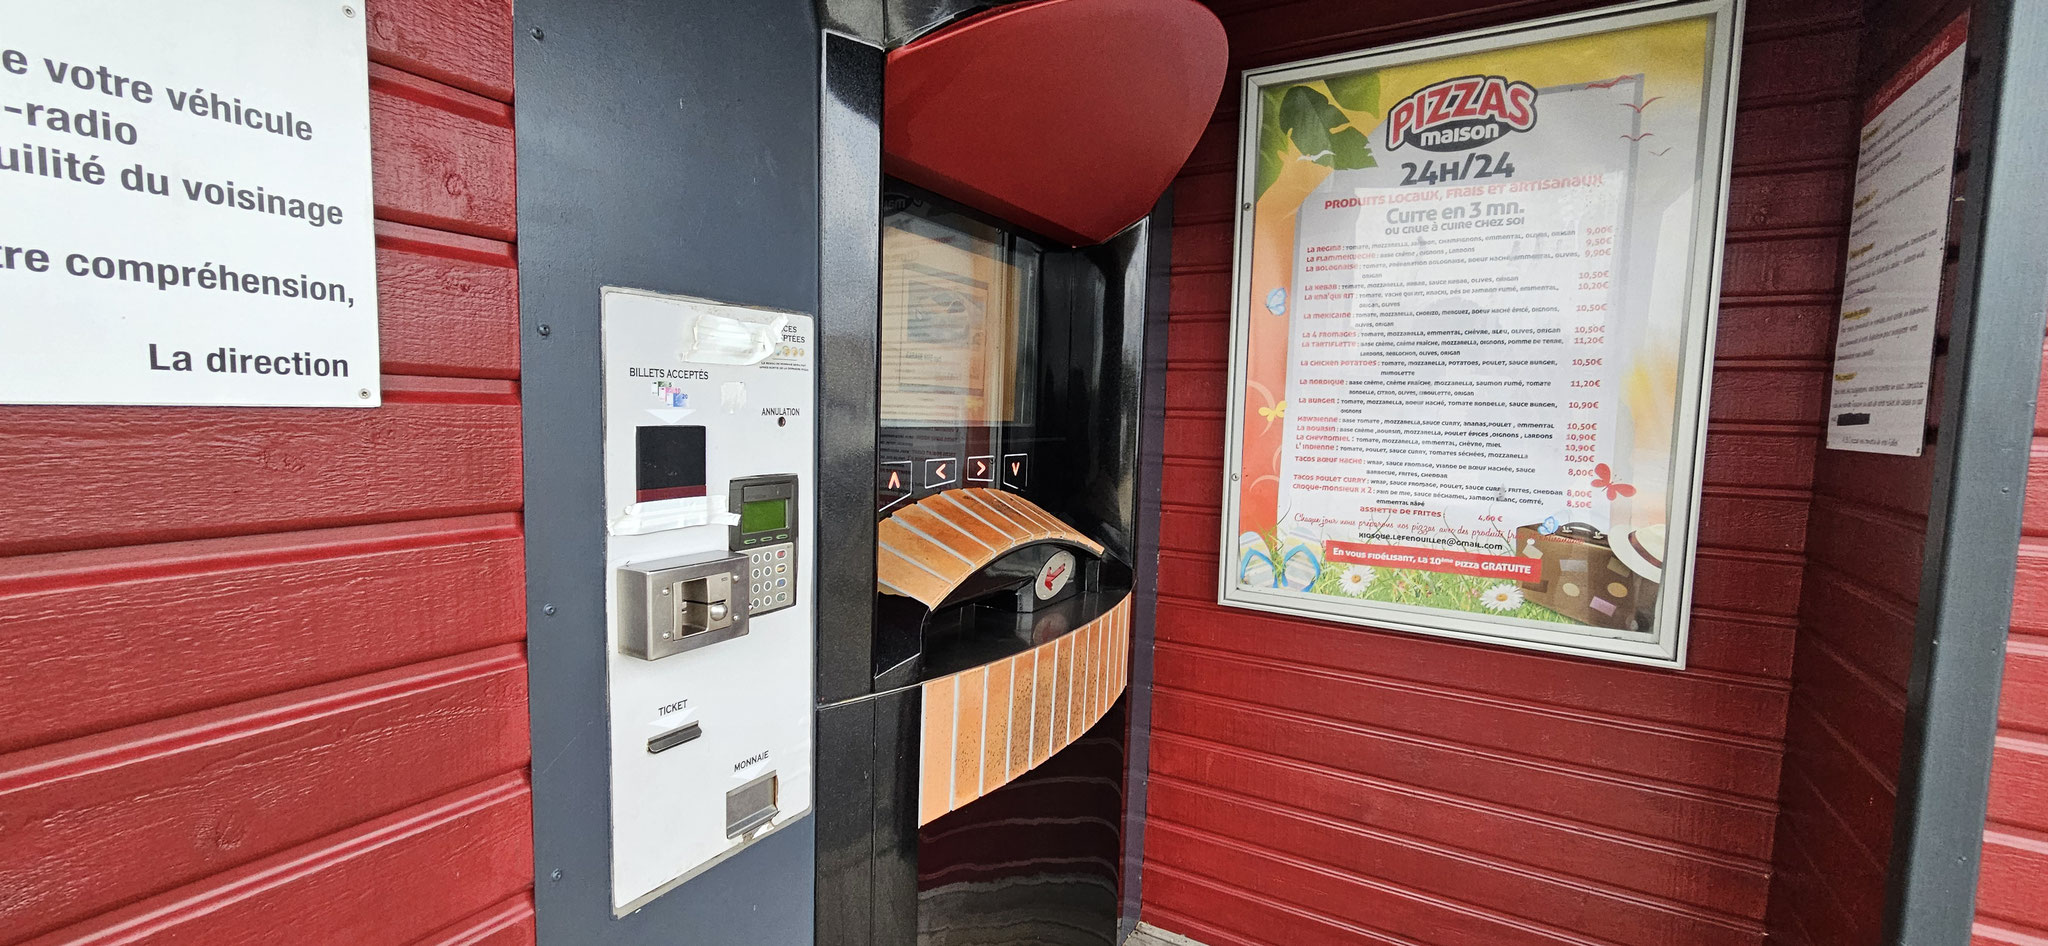 So - jetzt wird endlich dieser Pizza-Automat gestestet...